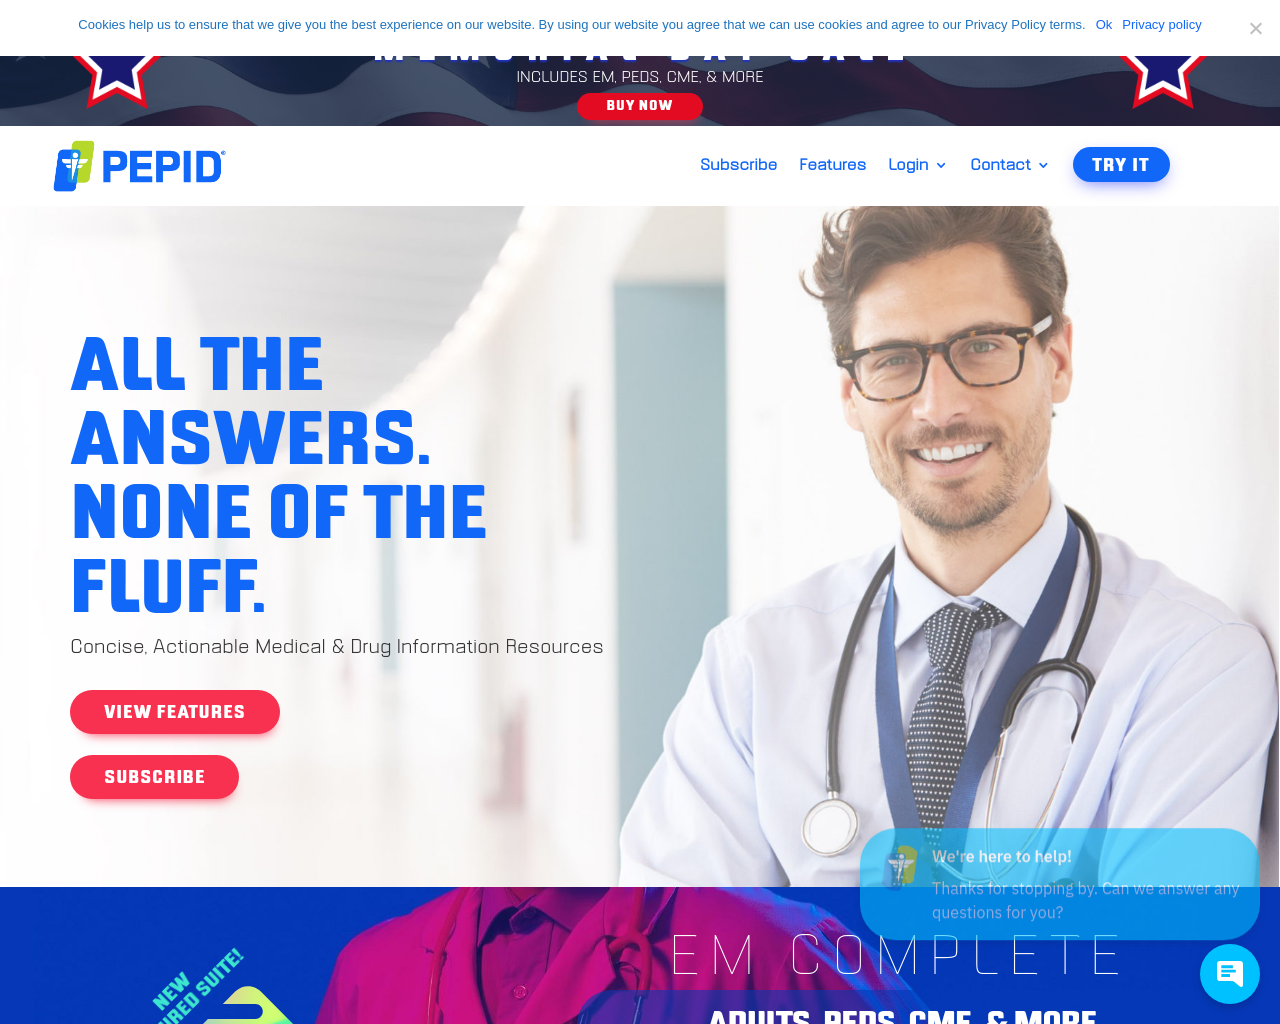 pepid.com